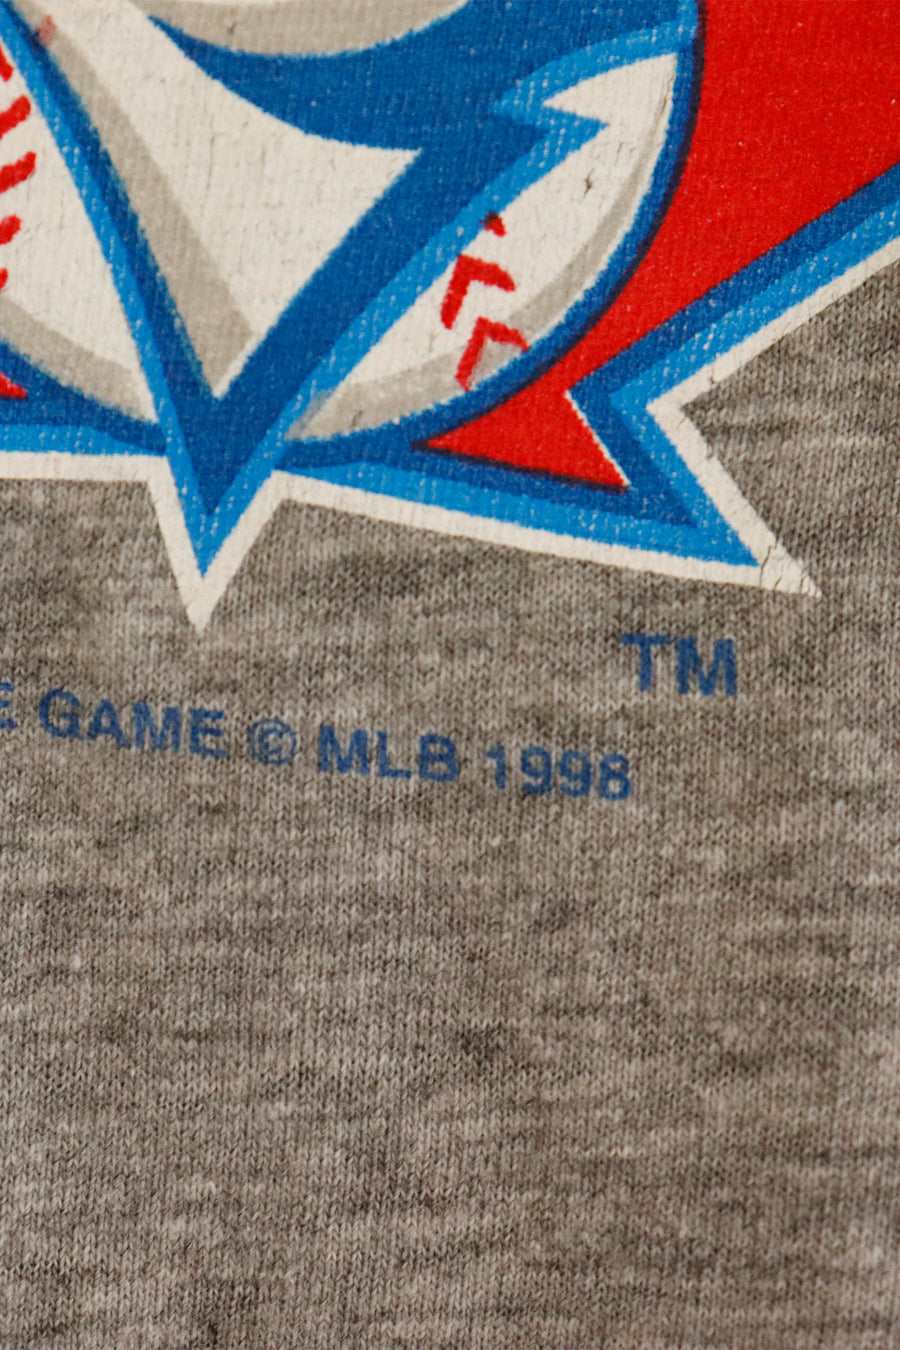 Vintage 1998 Toronto Blue Jays Bird And Logo T Shirt Sz L